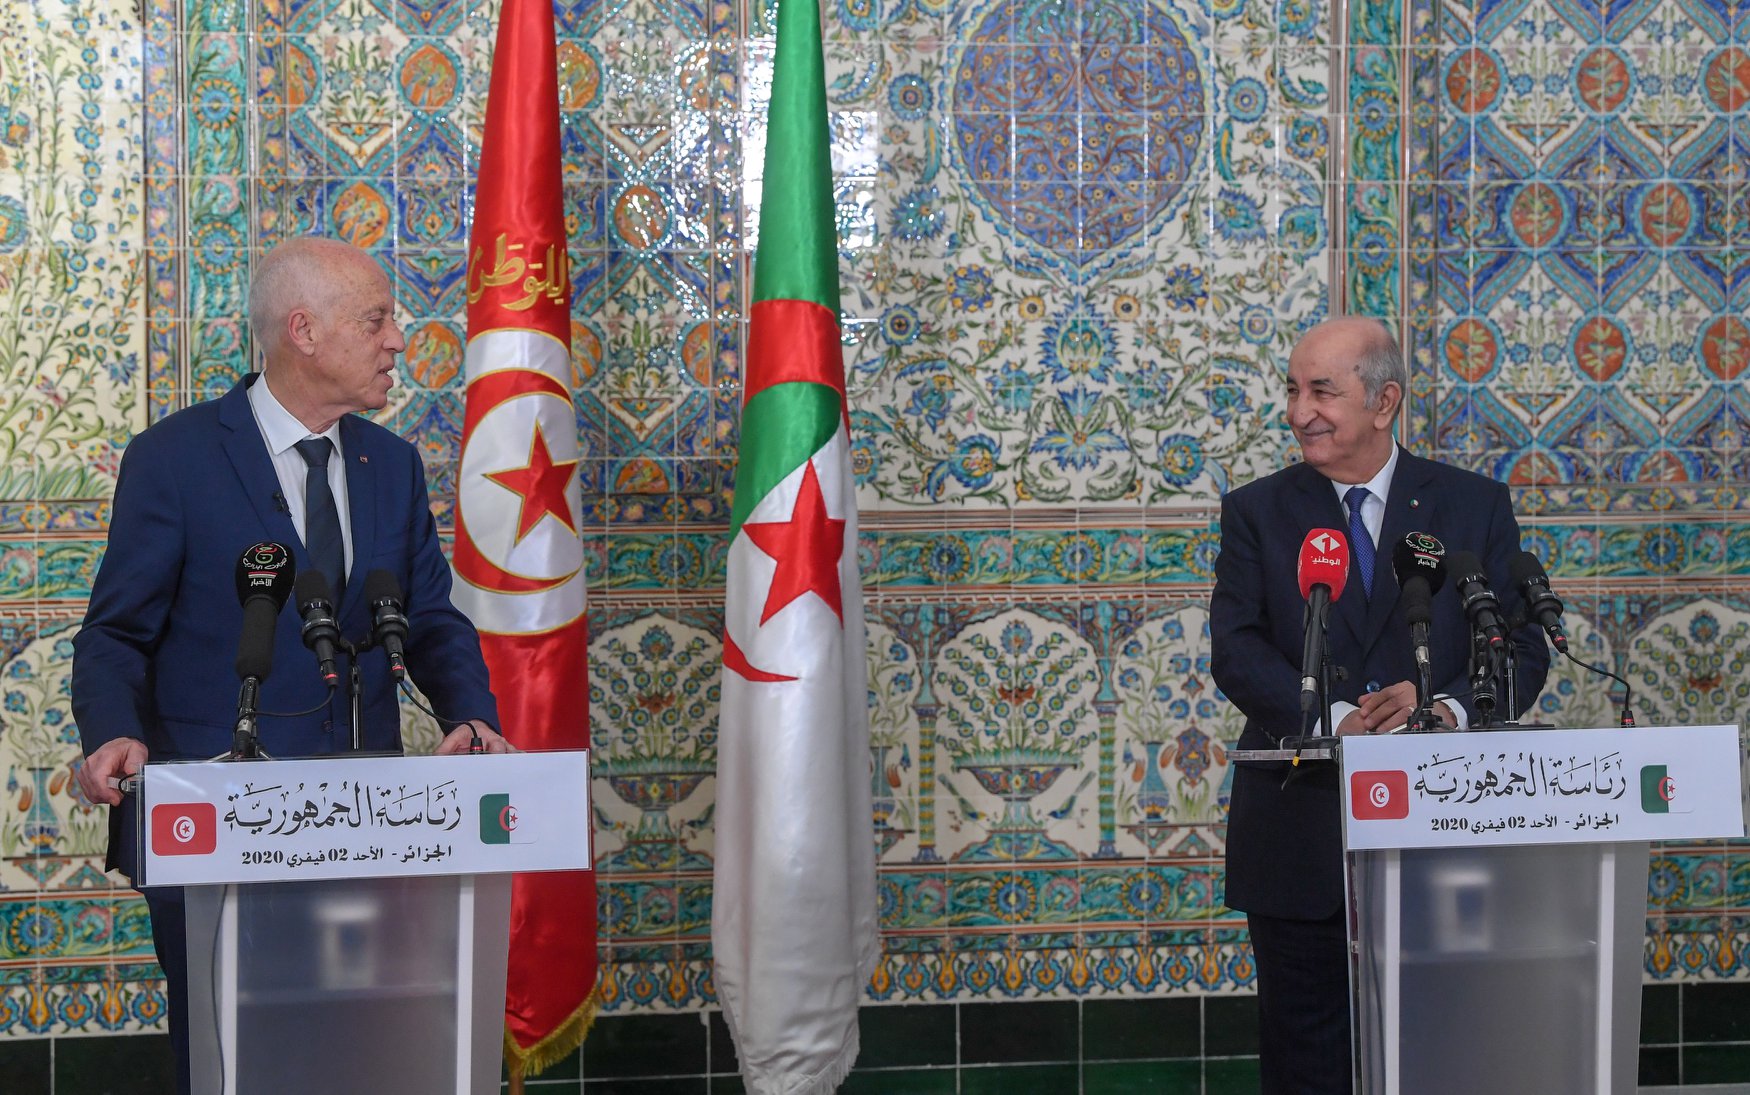 تبون إثر محادثاته مع سعيّد: تونس والجزائر بداية الحلّ للأزمة الليبيّة و"صفقة القرن" مرفوضة